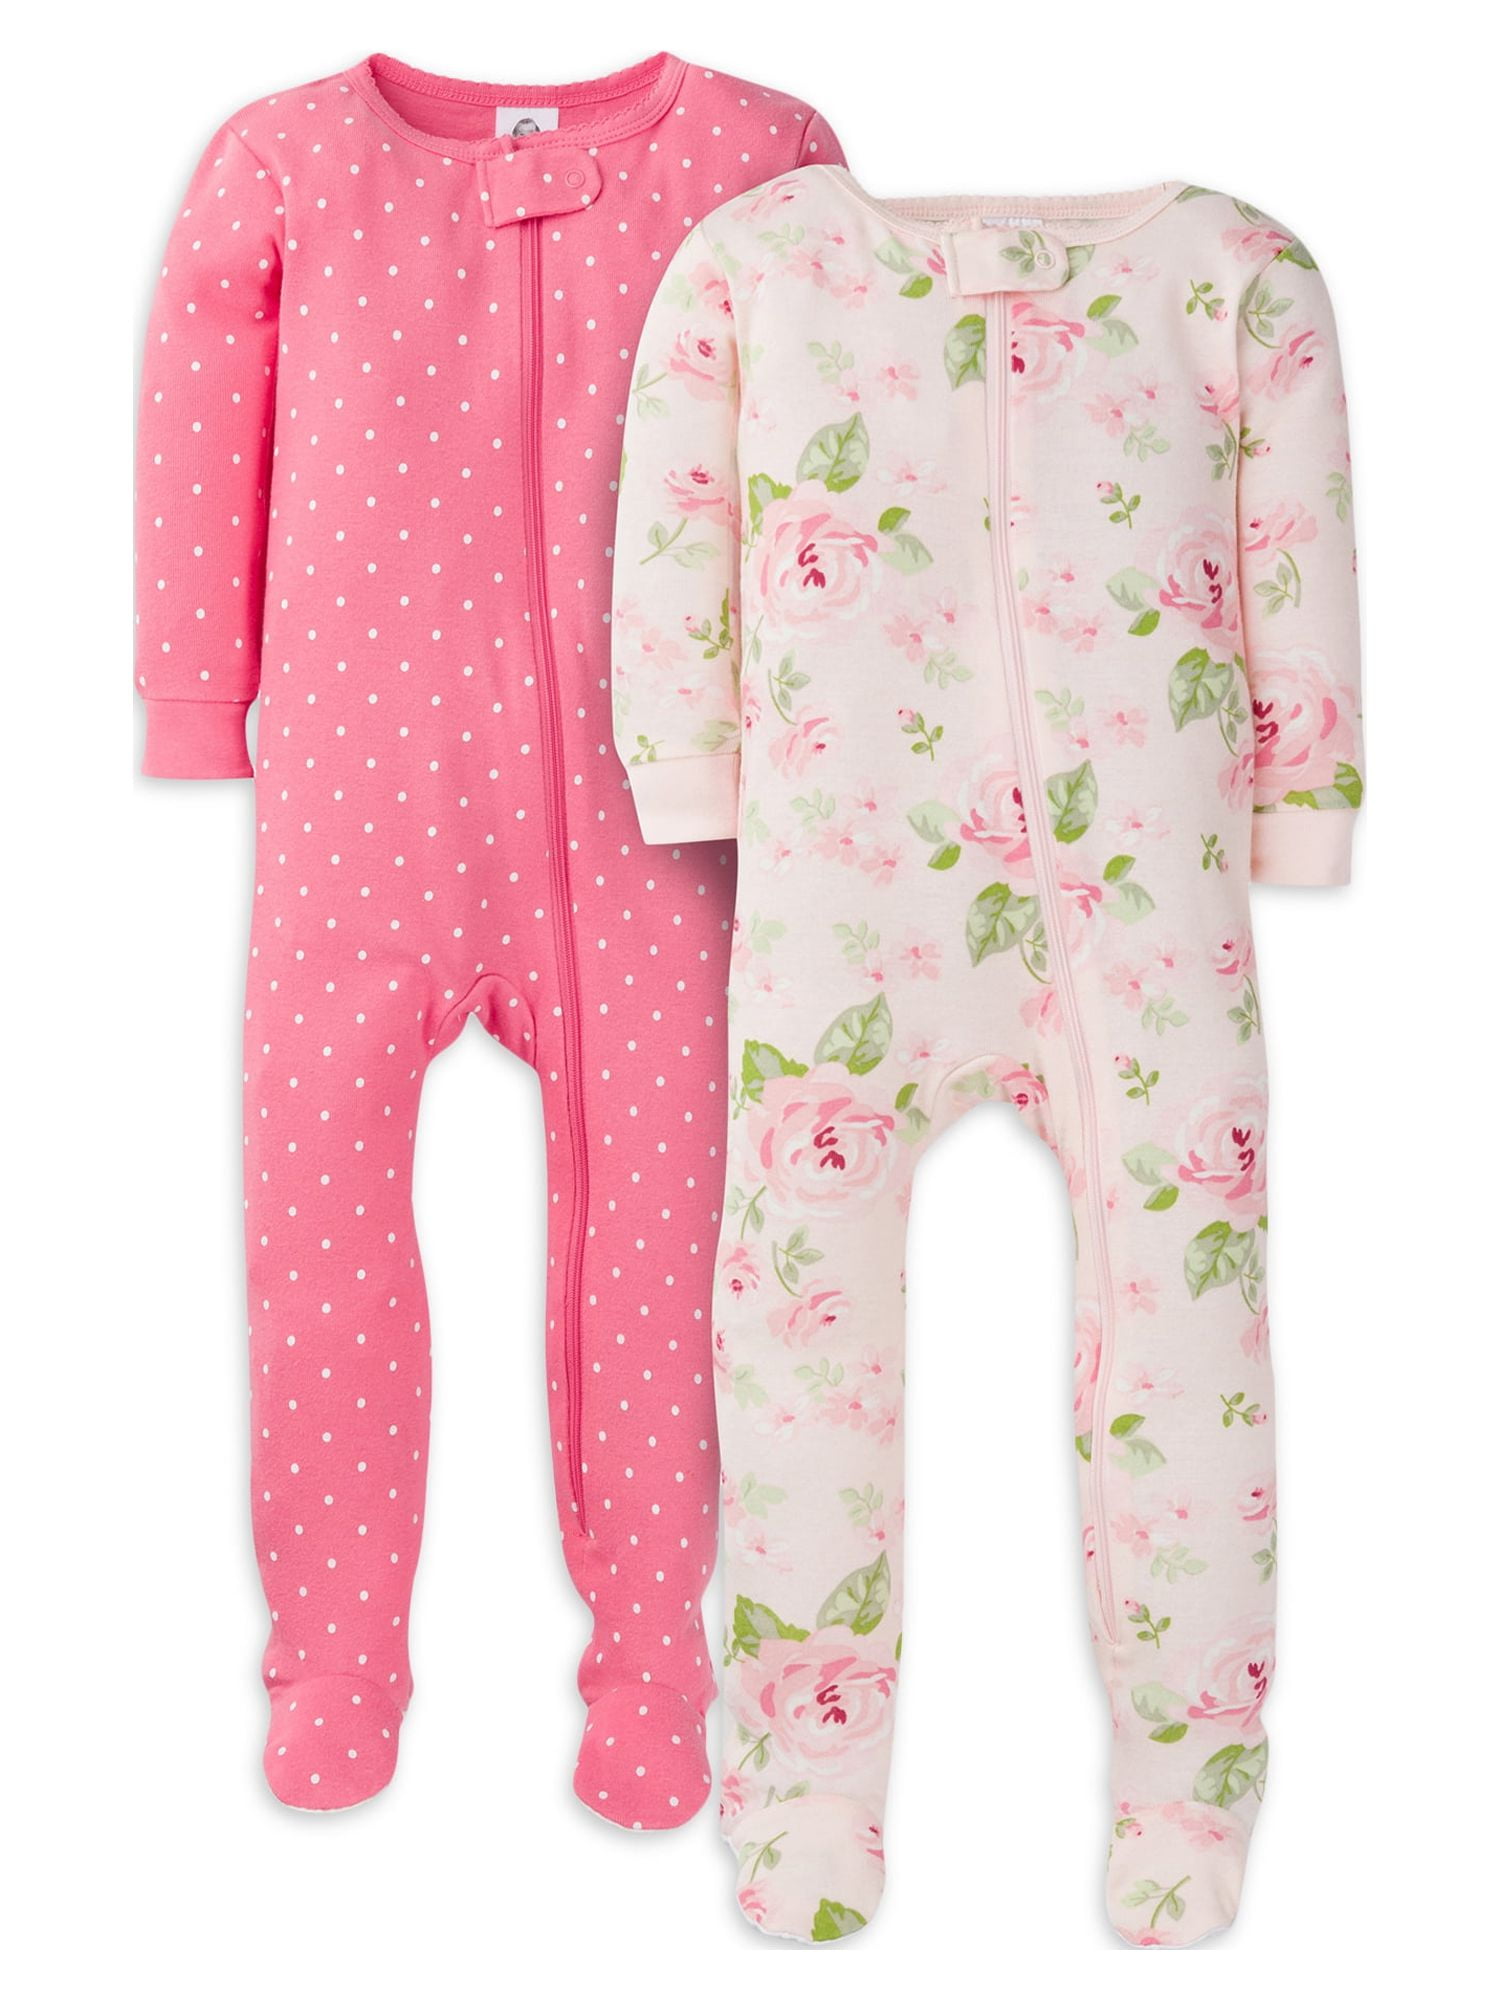 Gerber Pijama Sleep N Play de algodón orgánico con cremallera, talla 0-3  meses, 2 unidades (bebé niña), rosa, Rosado